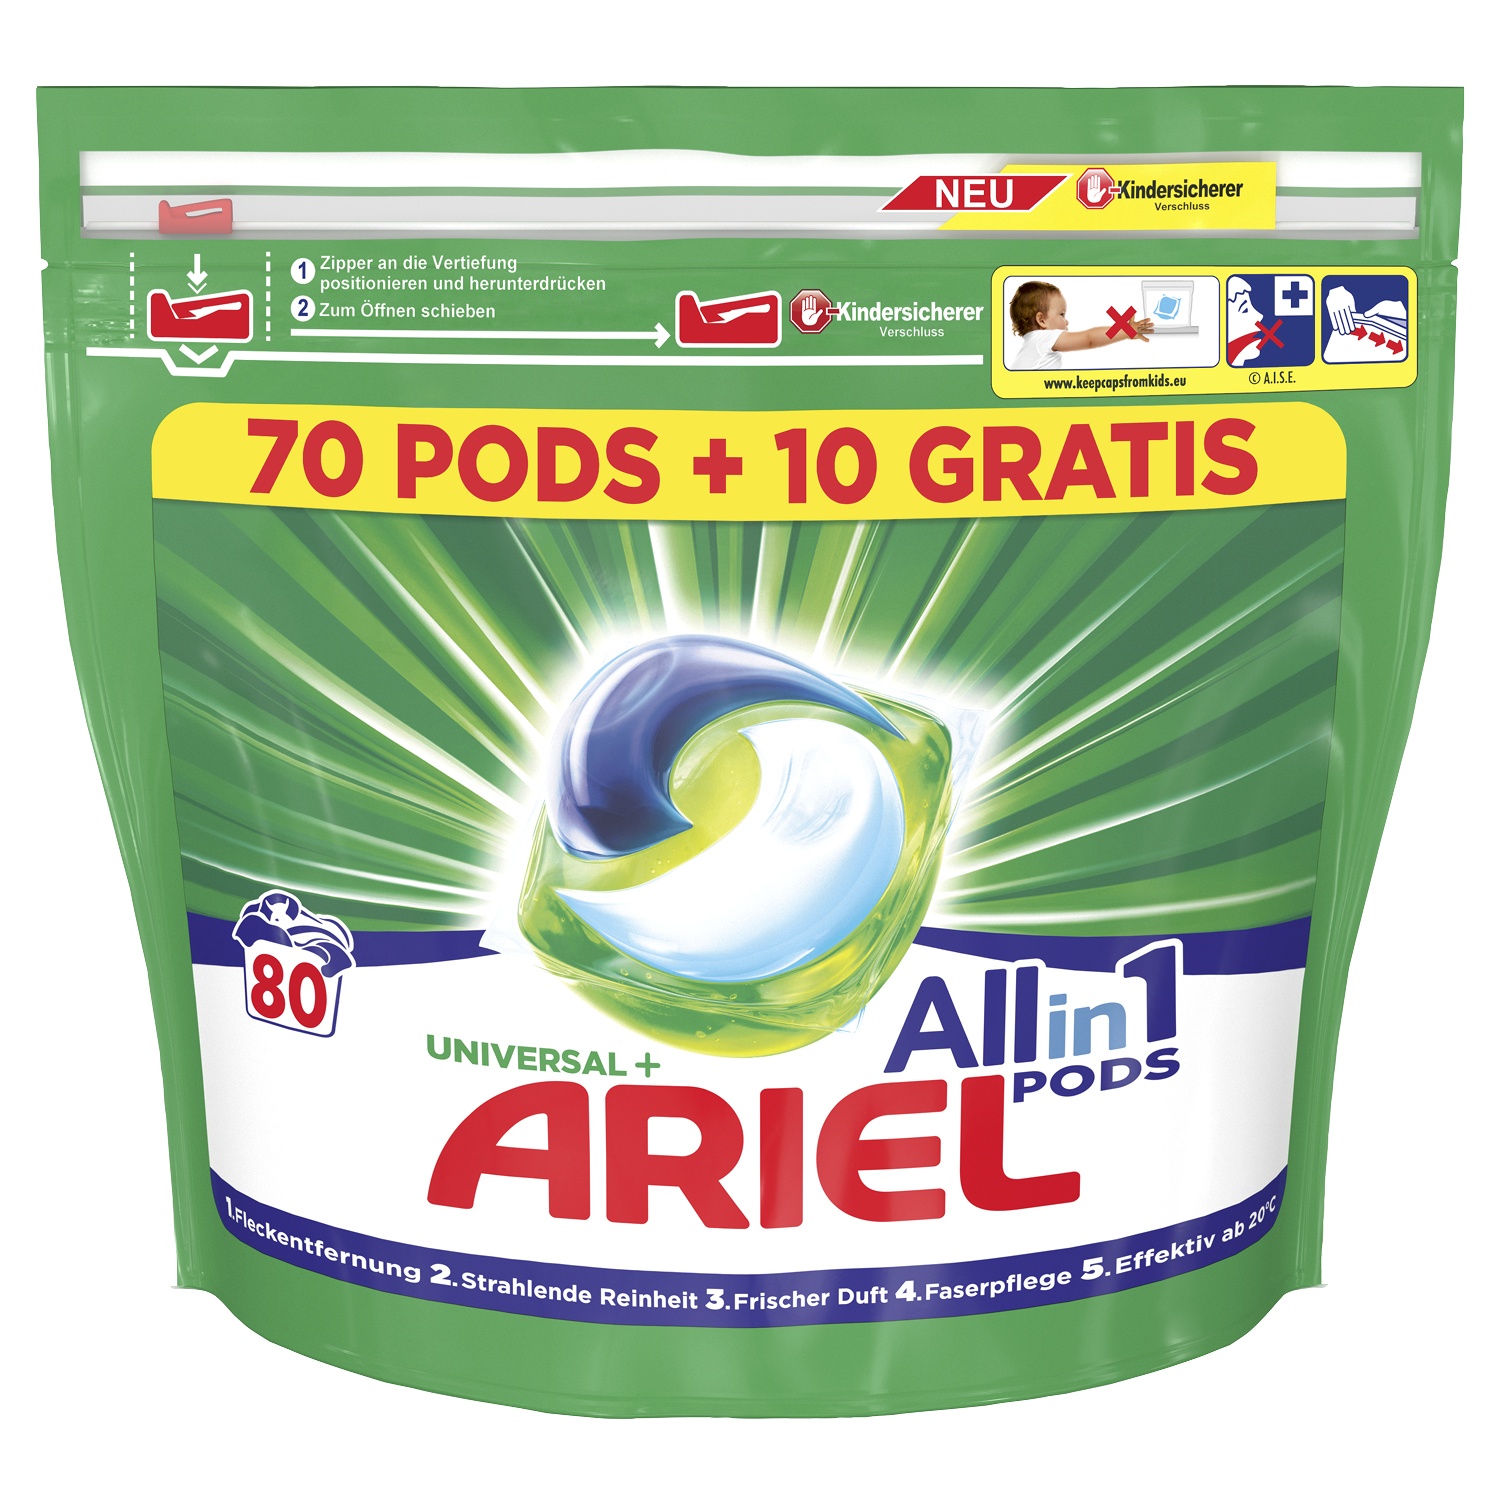 ARIEL Waschmittel All-in-1 PODS Universal 70 + 10 WL